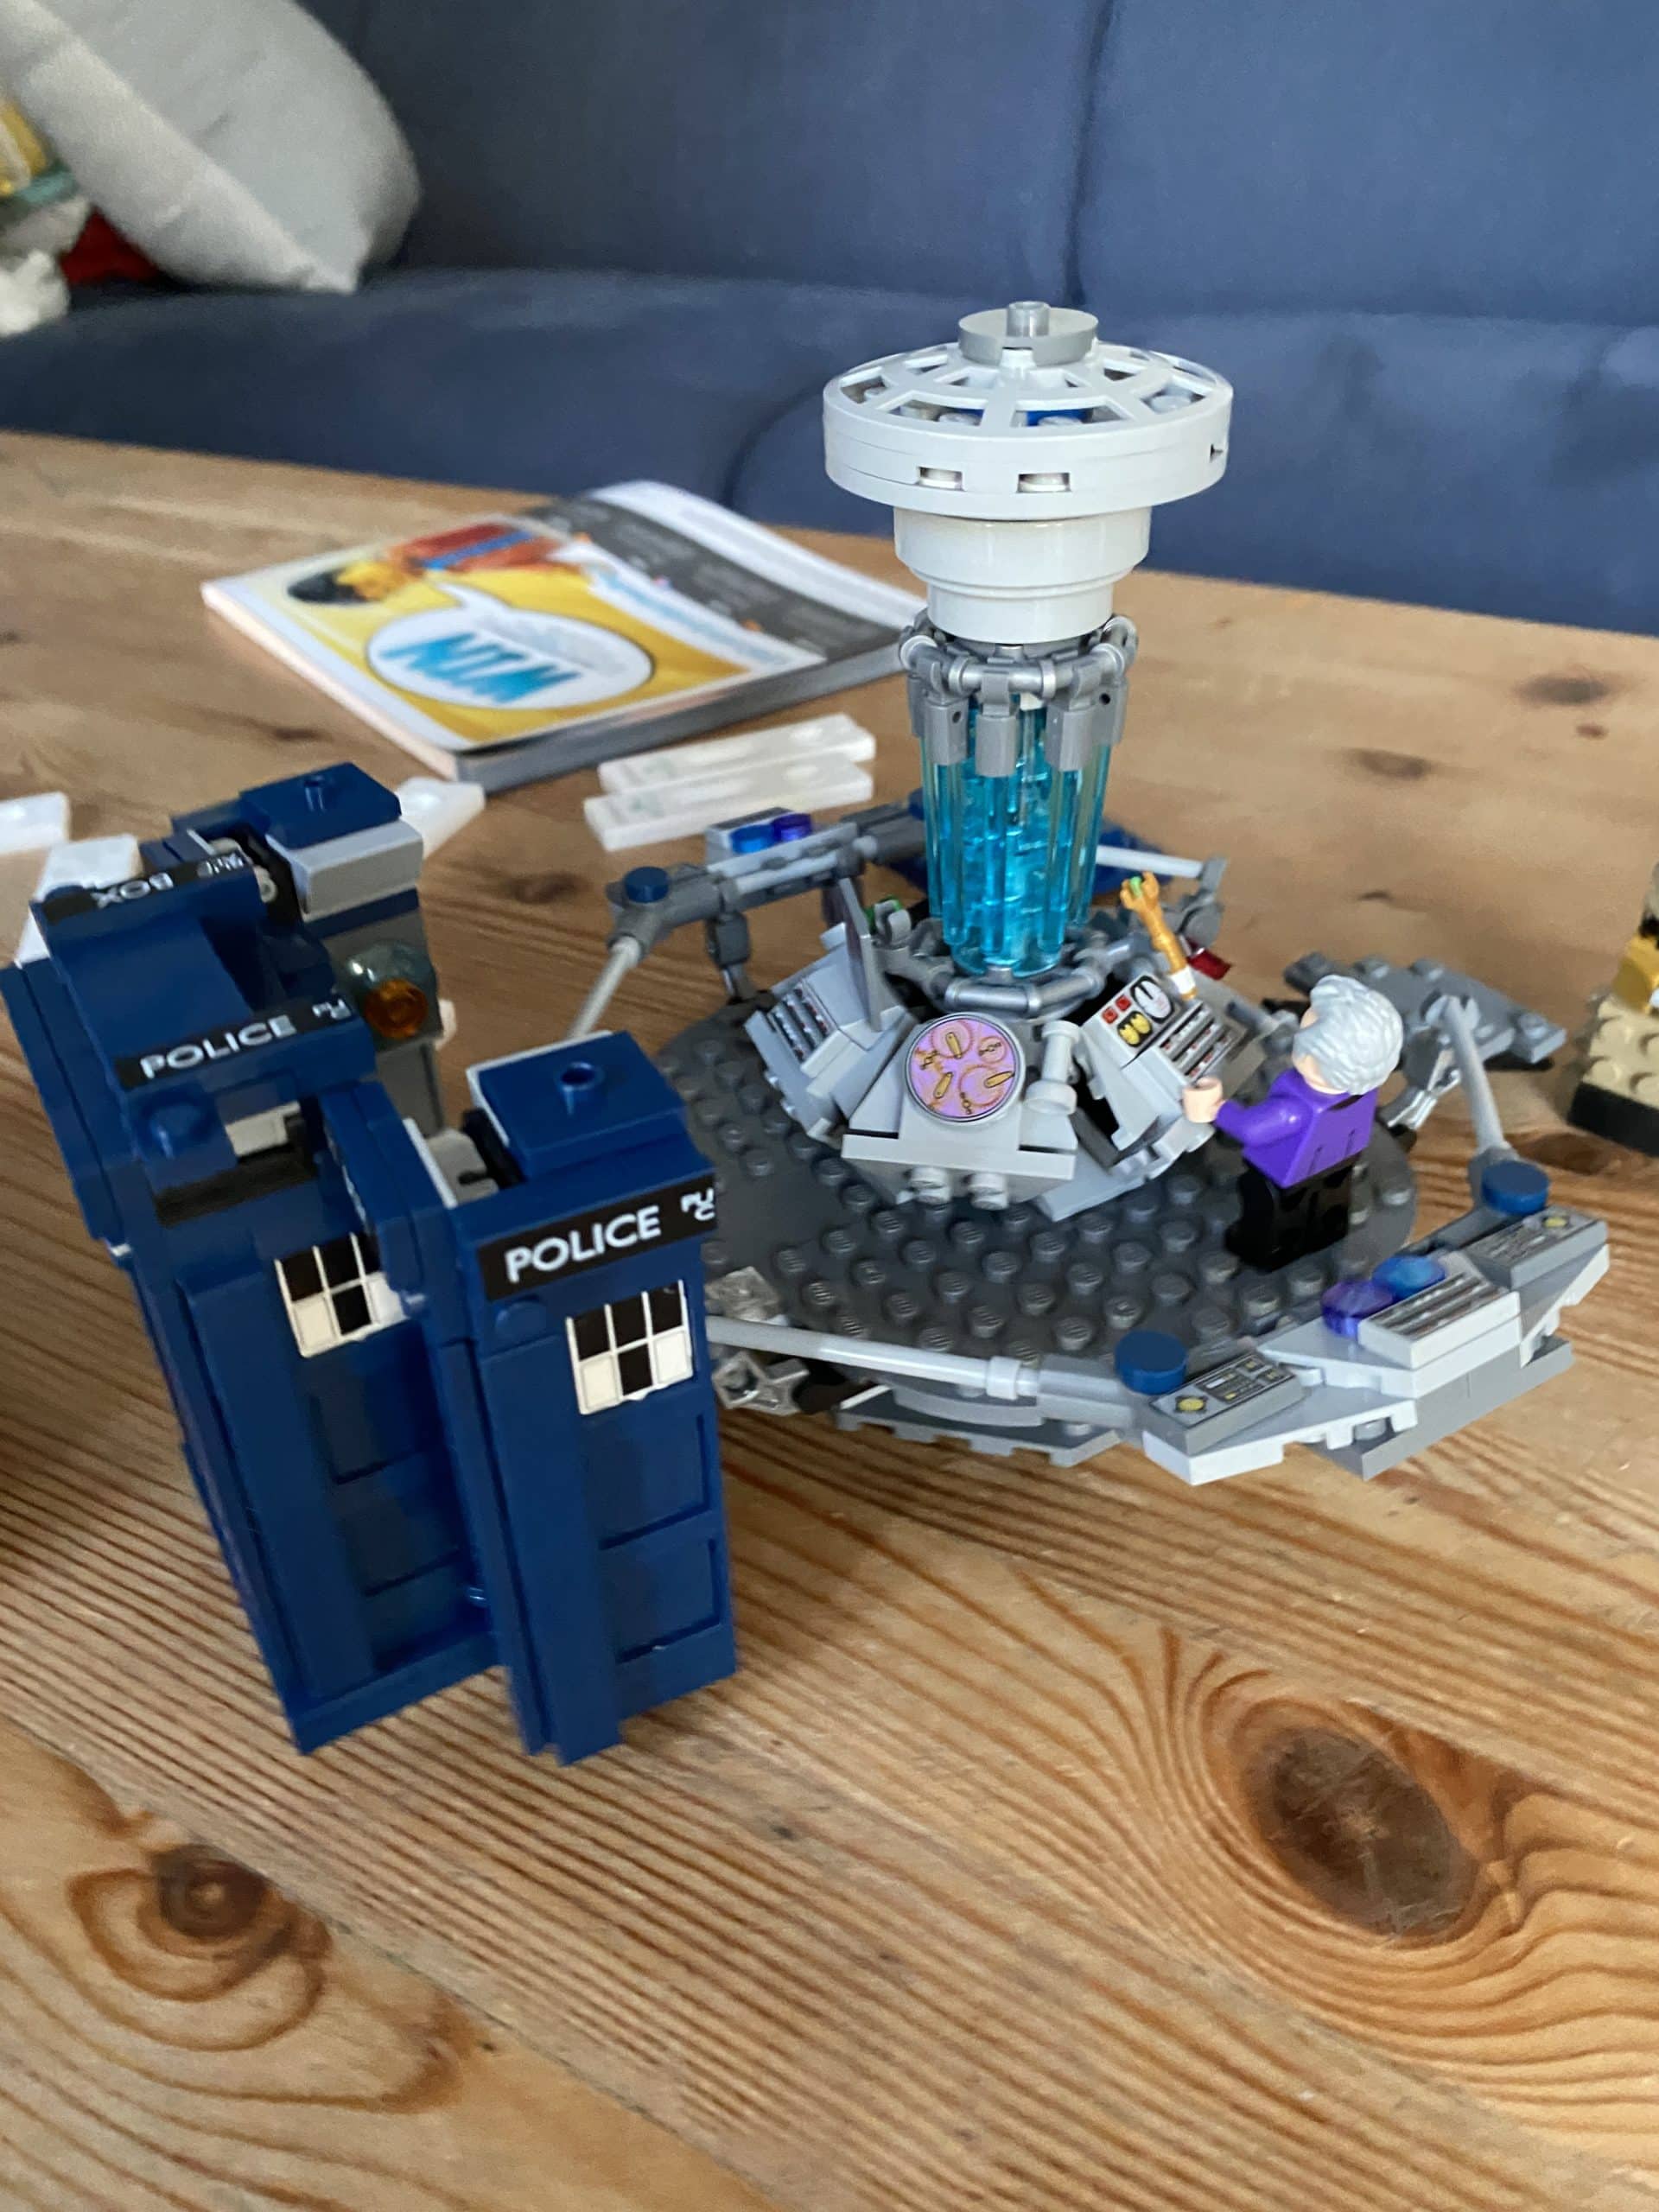 Nicht zuletzt wird auch das Dr. Who Lego Set aufgebaut. Mein ganzer Stolz.